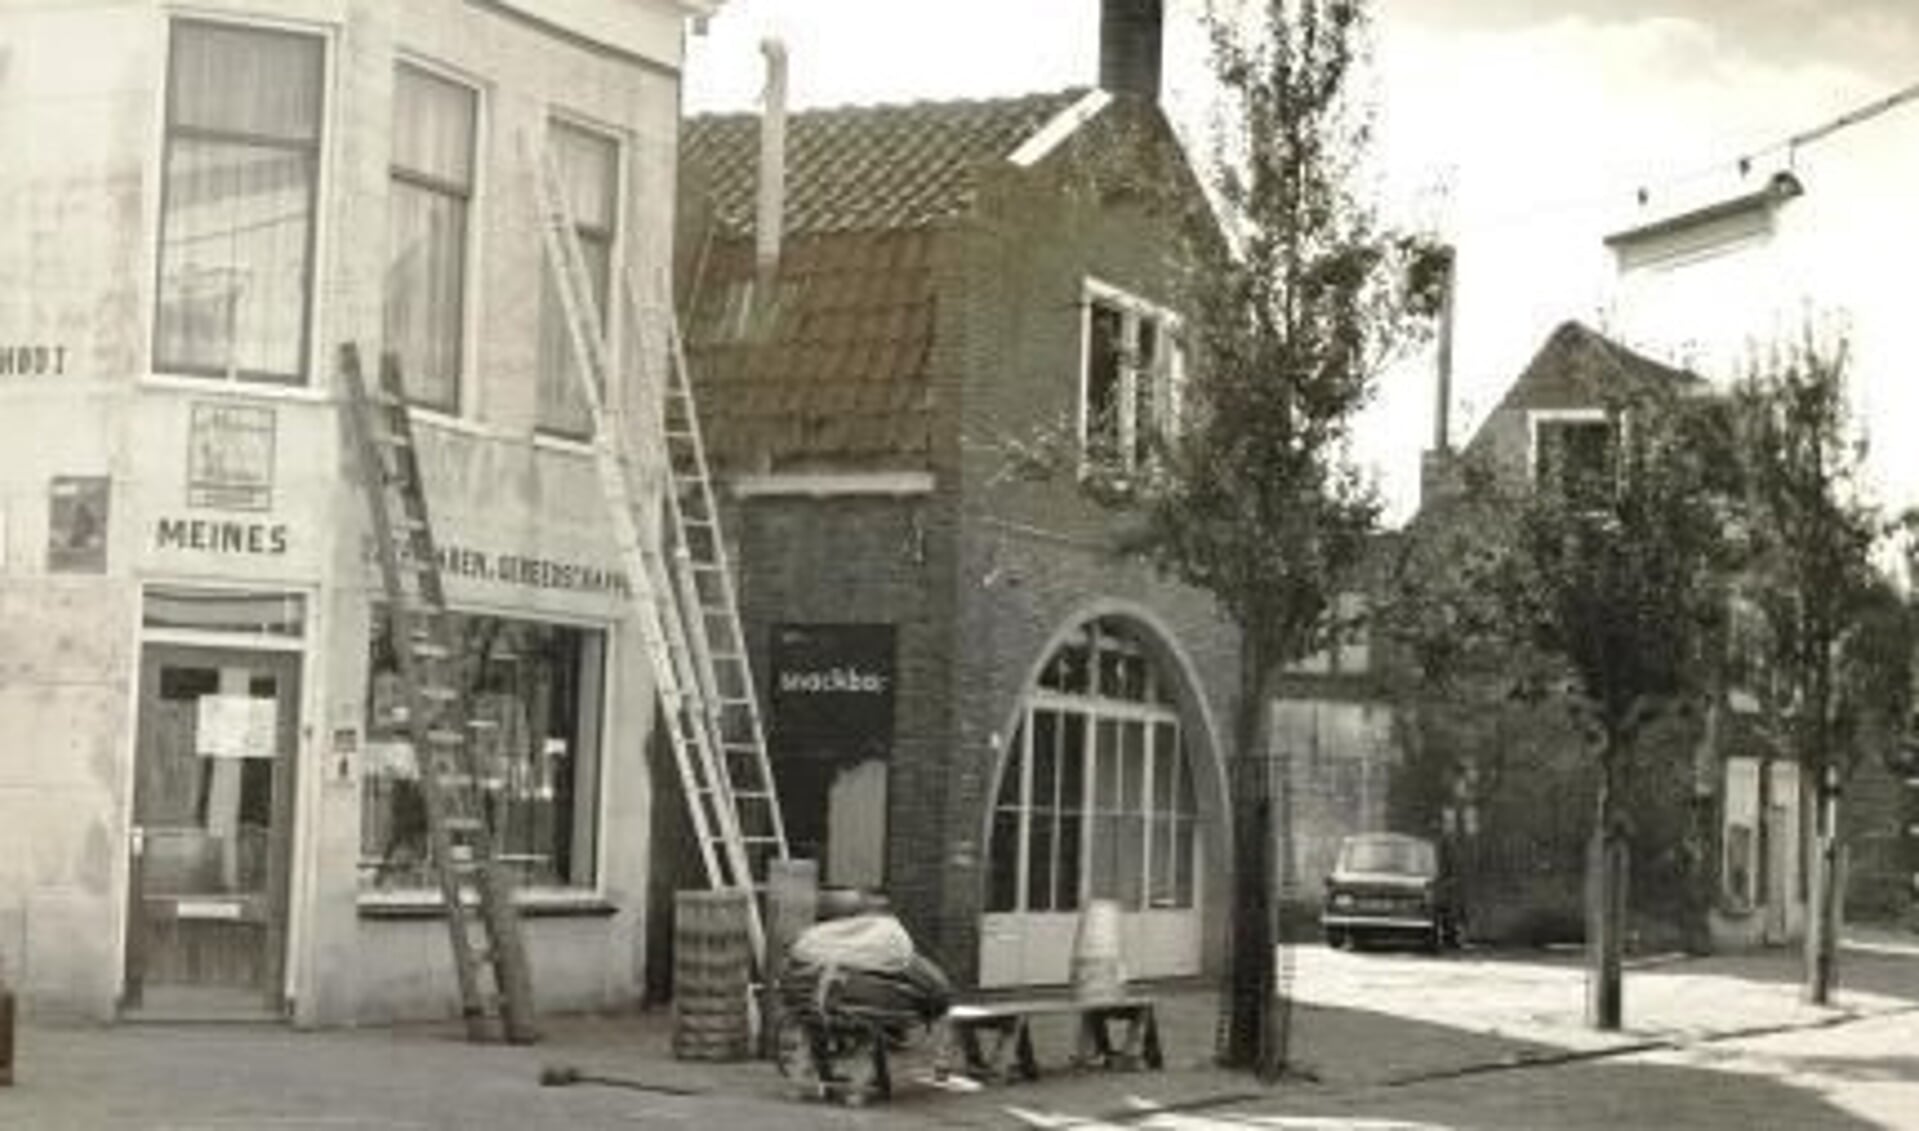 Vroeger was Meines gevestigd aan de Willem Eggertstraat, pal aan de Varkensmarkt. Ernaast de snackbar van Tiny Bakker. 